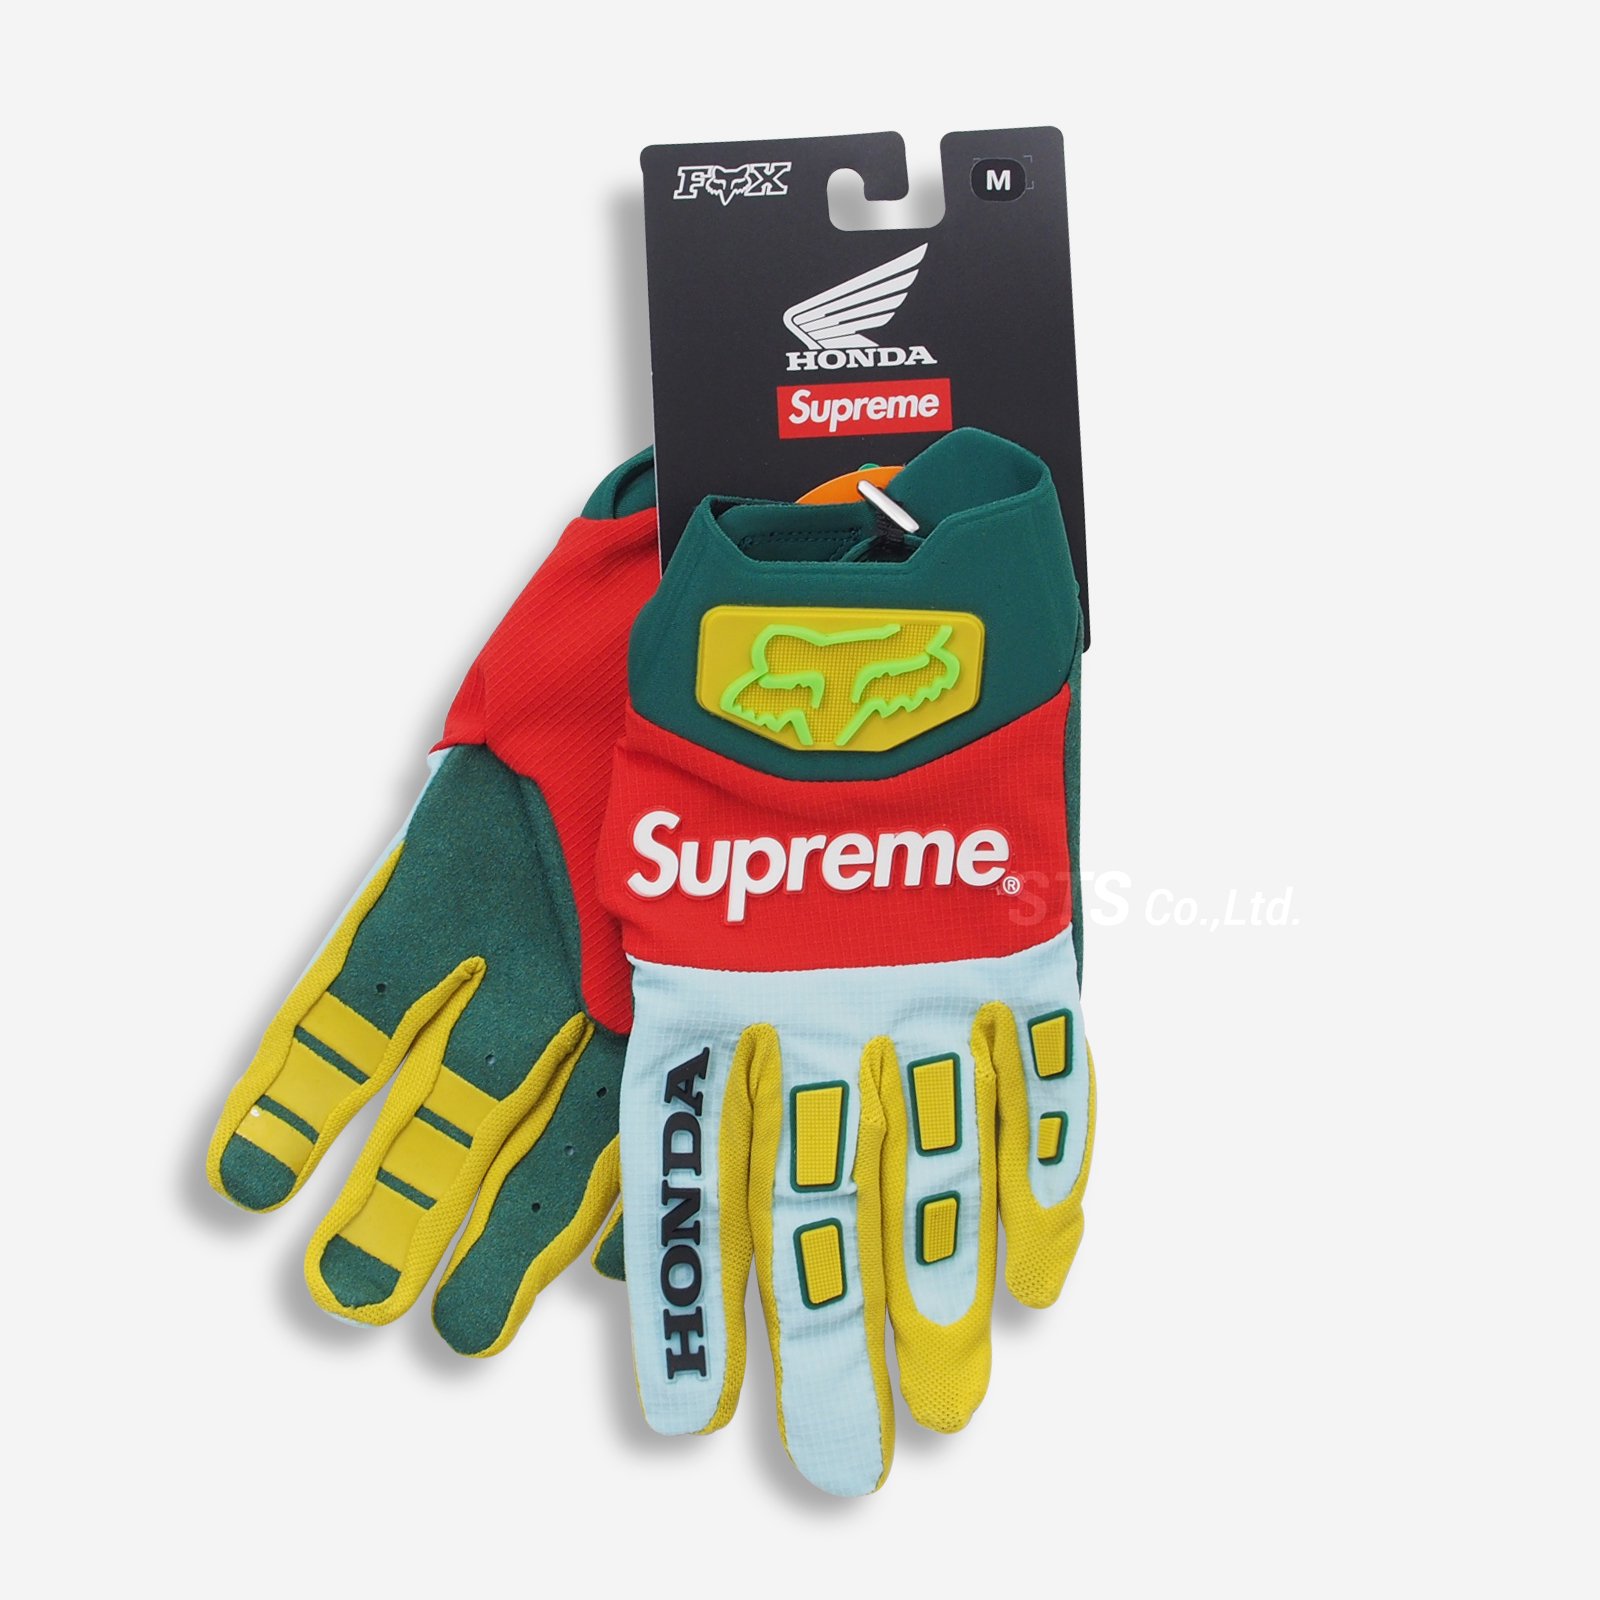 Supreme/Honda Fox Racing Gloves - UG.SHAFT